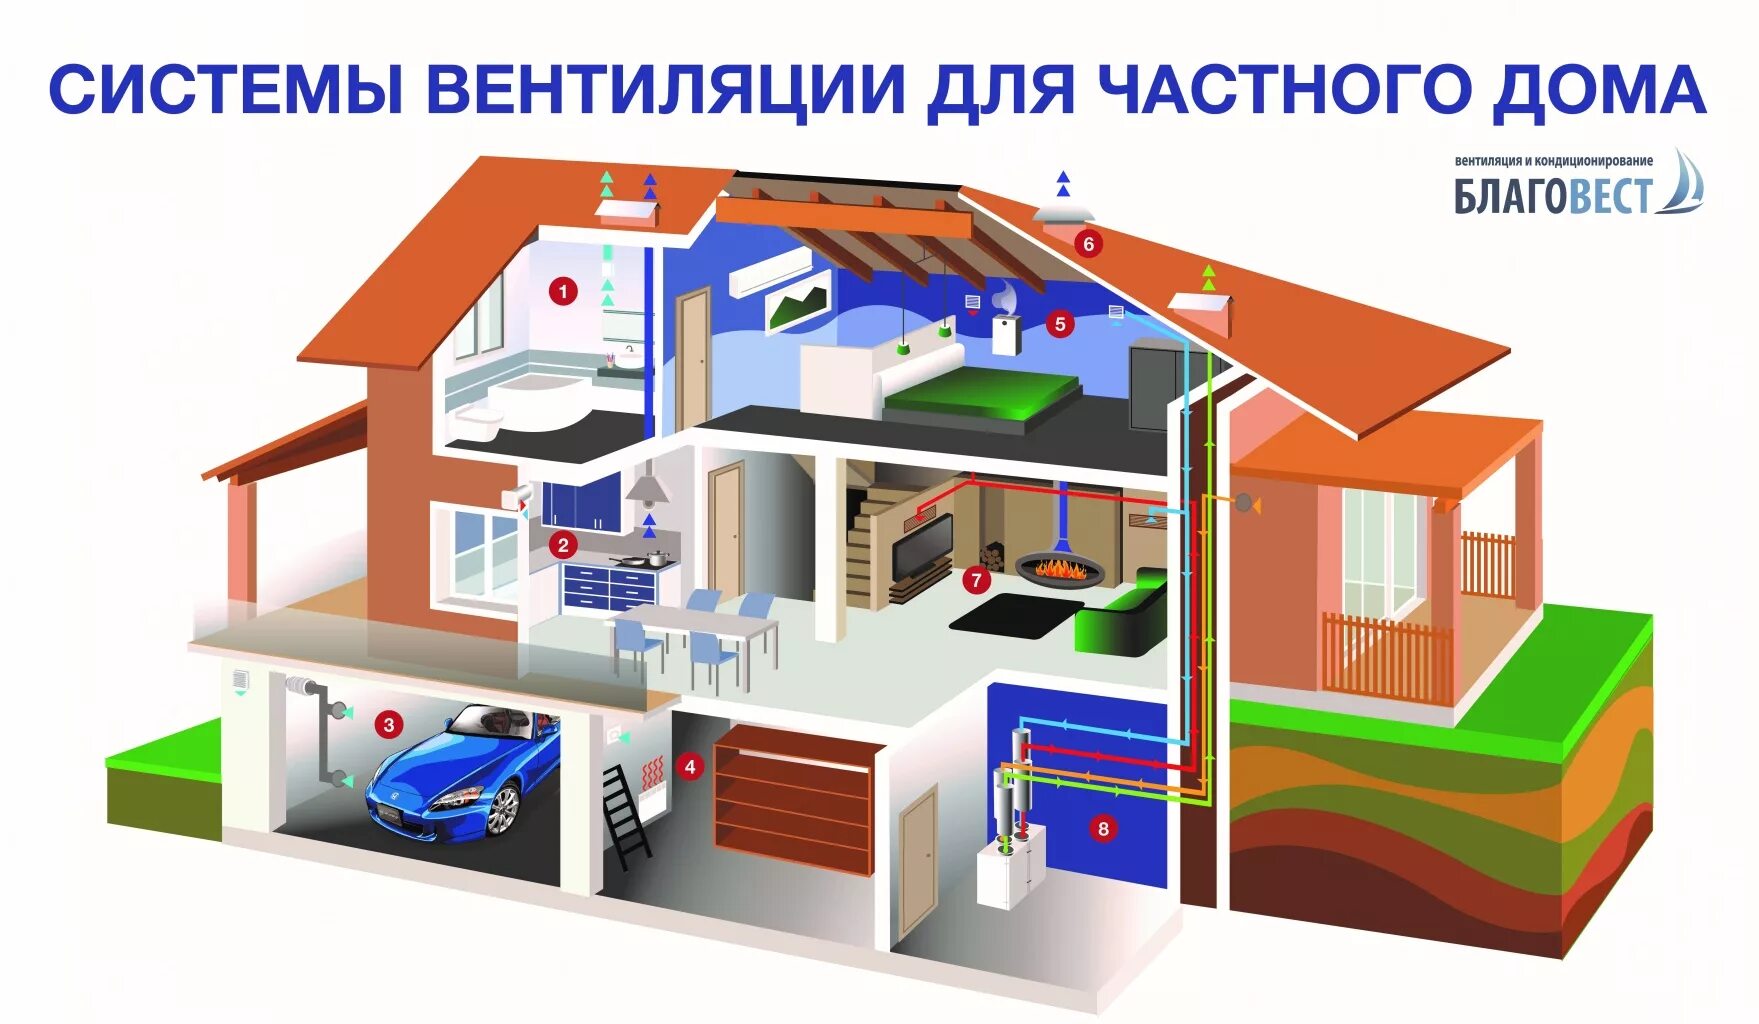 Вентиляционные системы для дома. Вентиляционная система для частного дома. Вентиляция в частном доме. Система вентиляции в частном доме. Кондиционирование и вентиляция в частном доме.